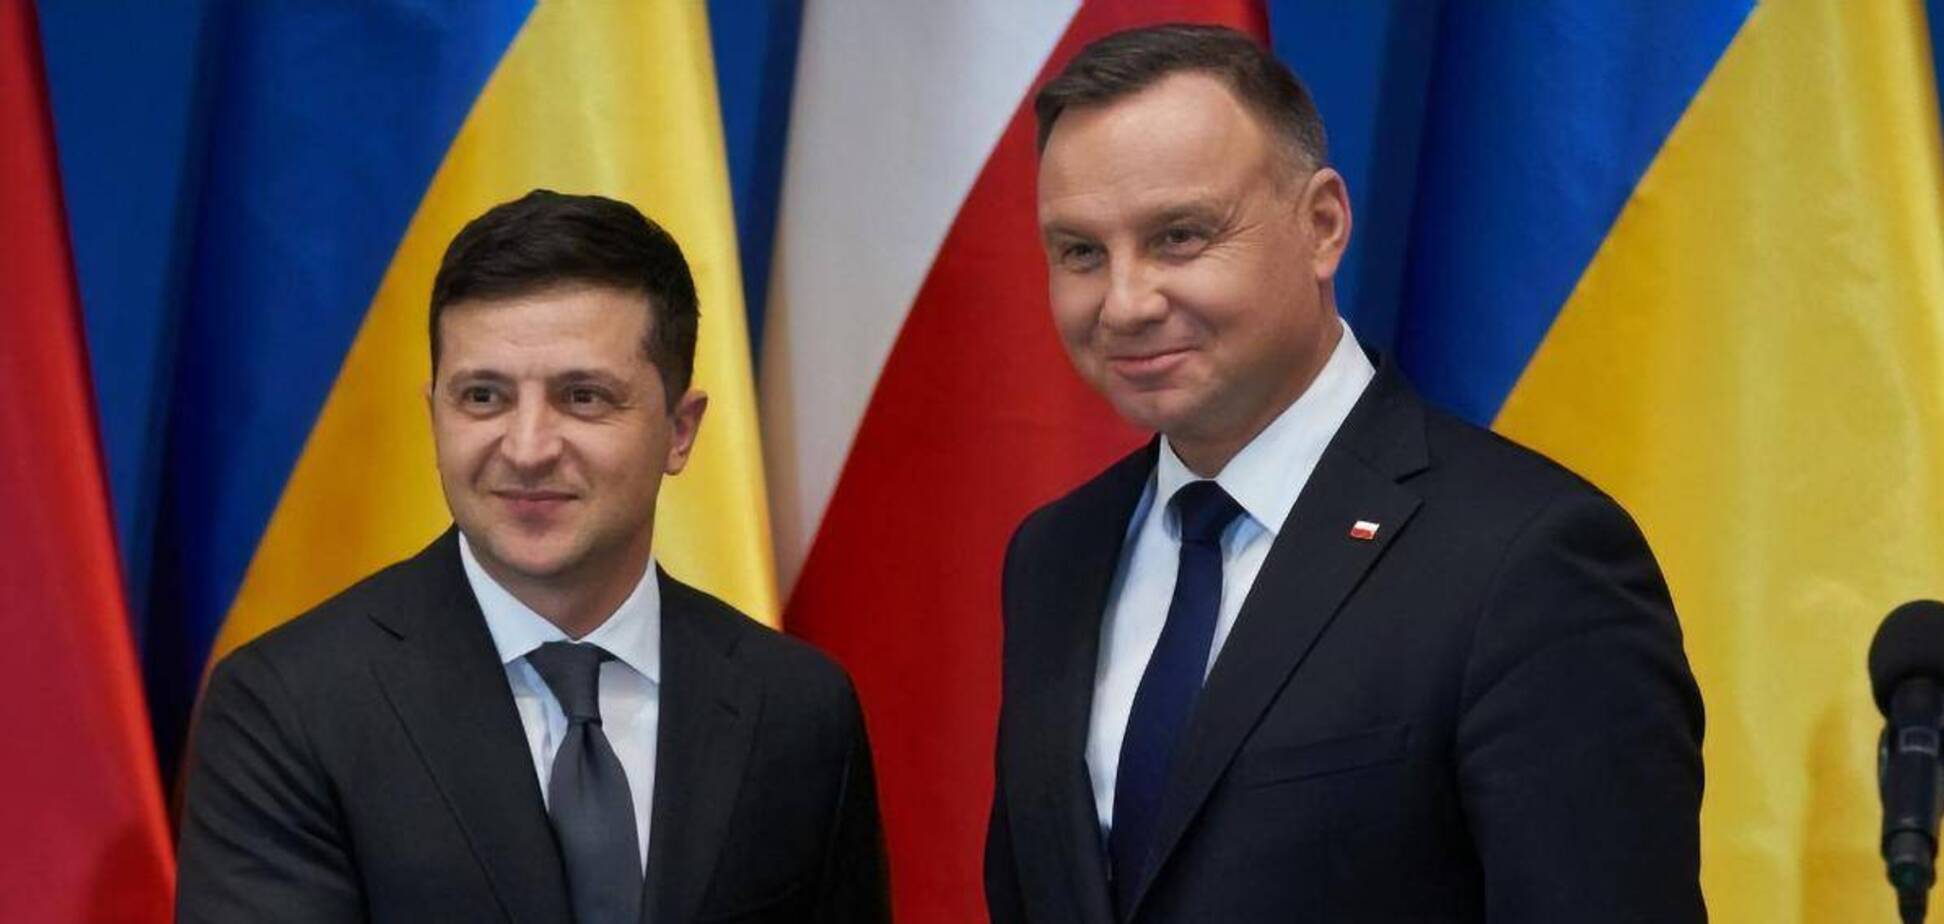 Дуда выигрывает президентские выборы в Польше: его уже поздравил Зеленский